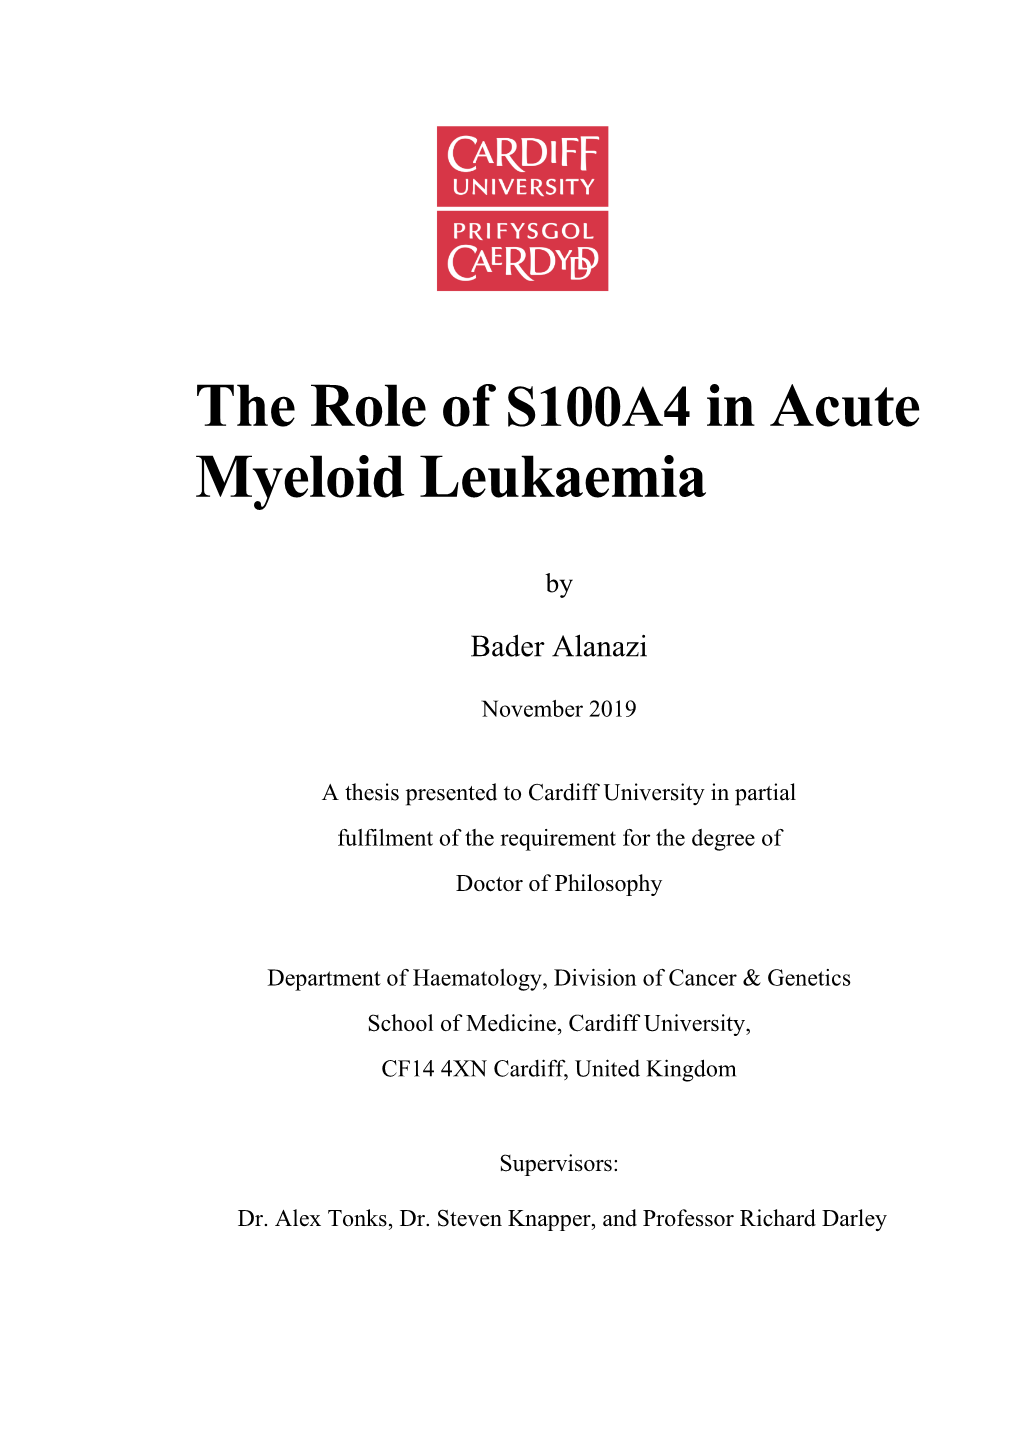 The Role of S100A4 in Acute Myeloid Leukaemia